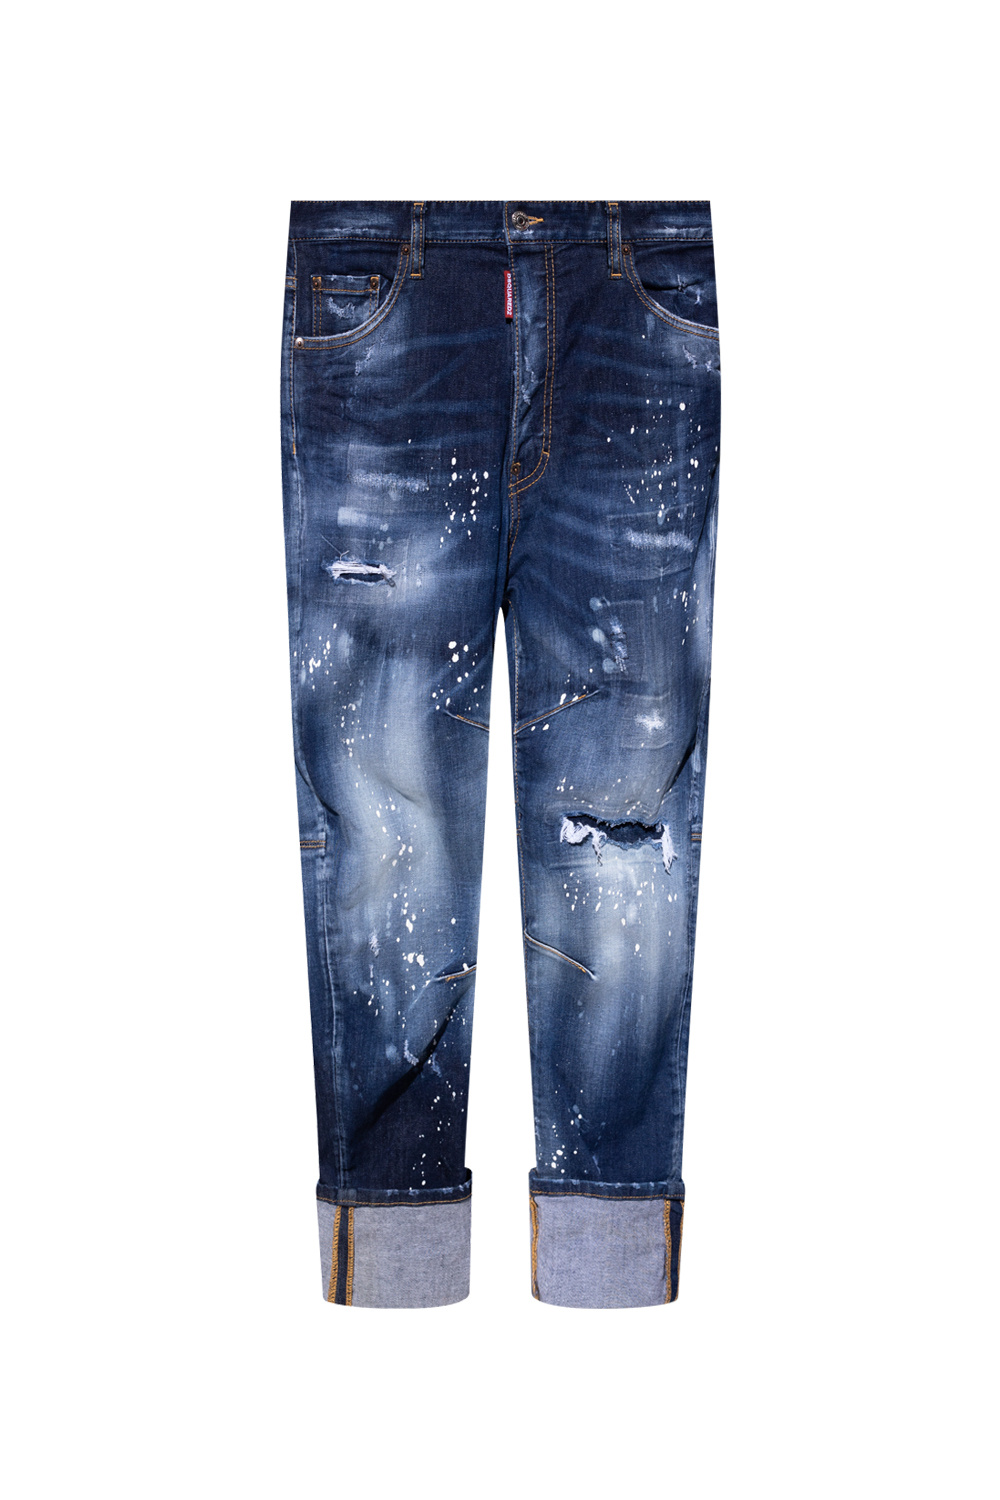 Men's Clothing | Dsquared2 'Combat' jeans | IetpShops | Mother's